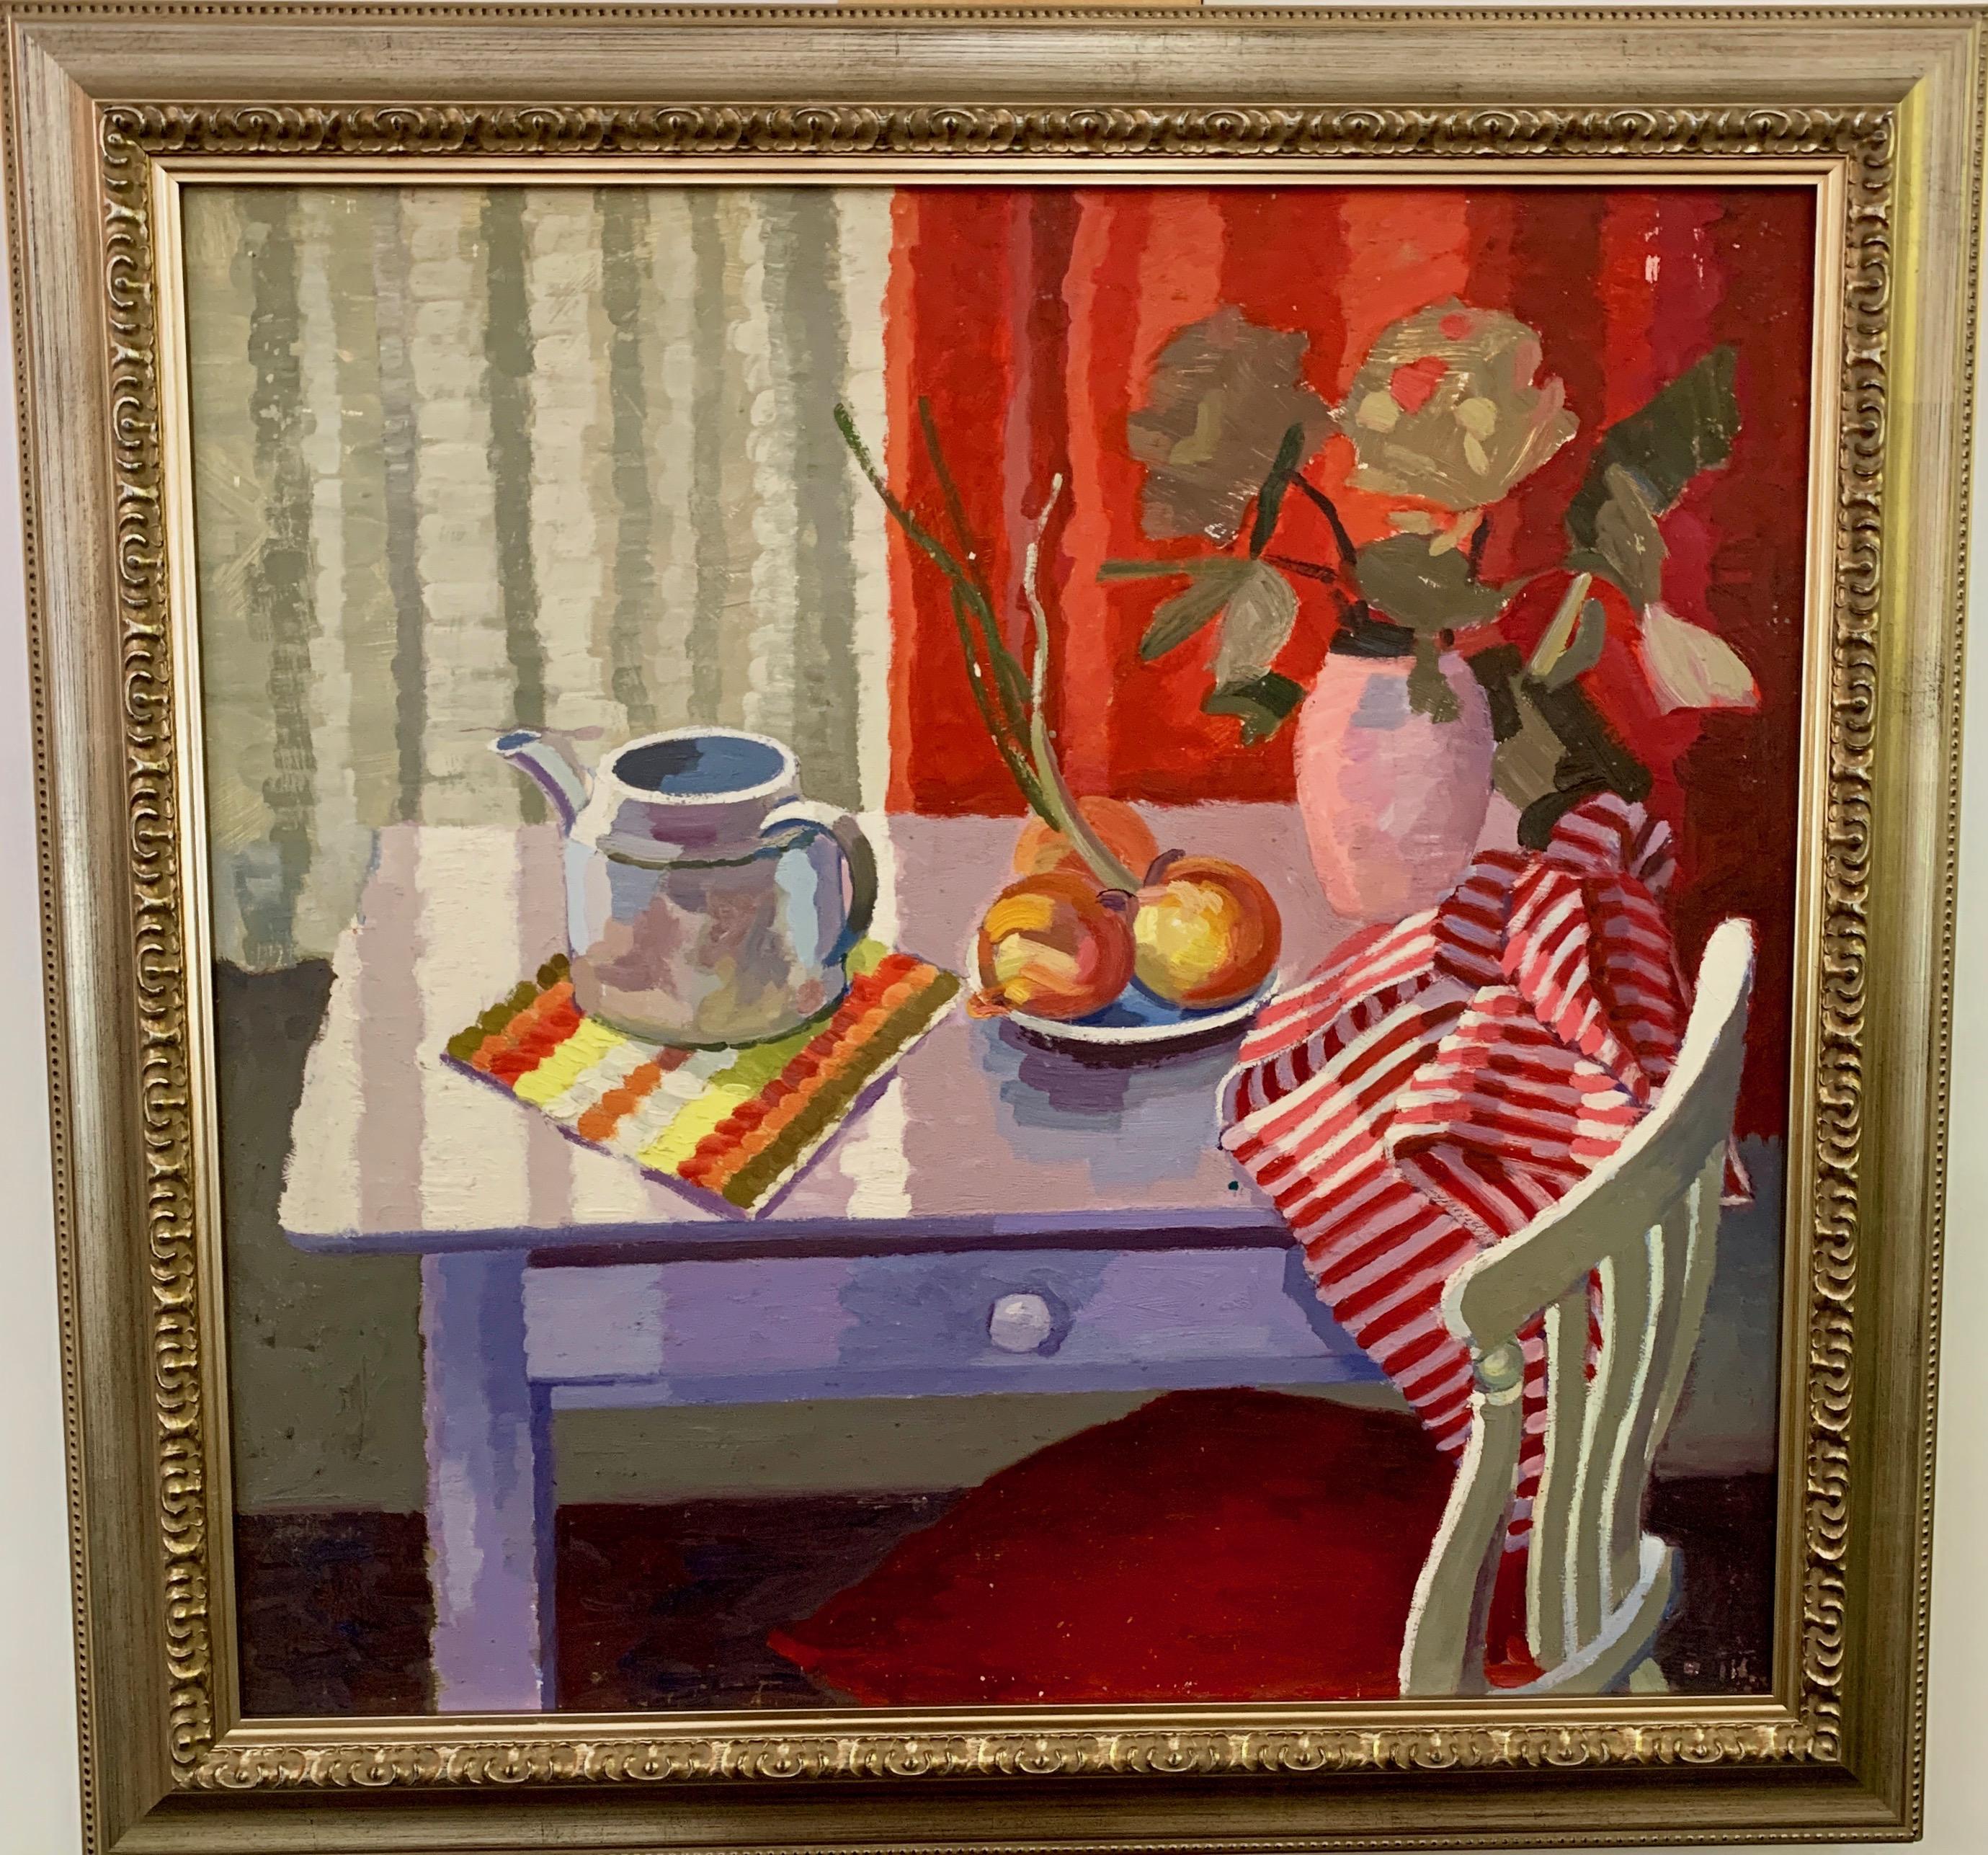 Interior Painting Jack Griffin - Nature morte d'intérieur anglaise avec théière, table et chaise, fruits et fleurs 1950s